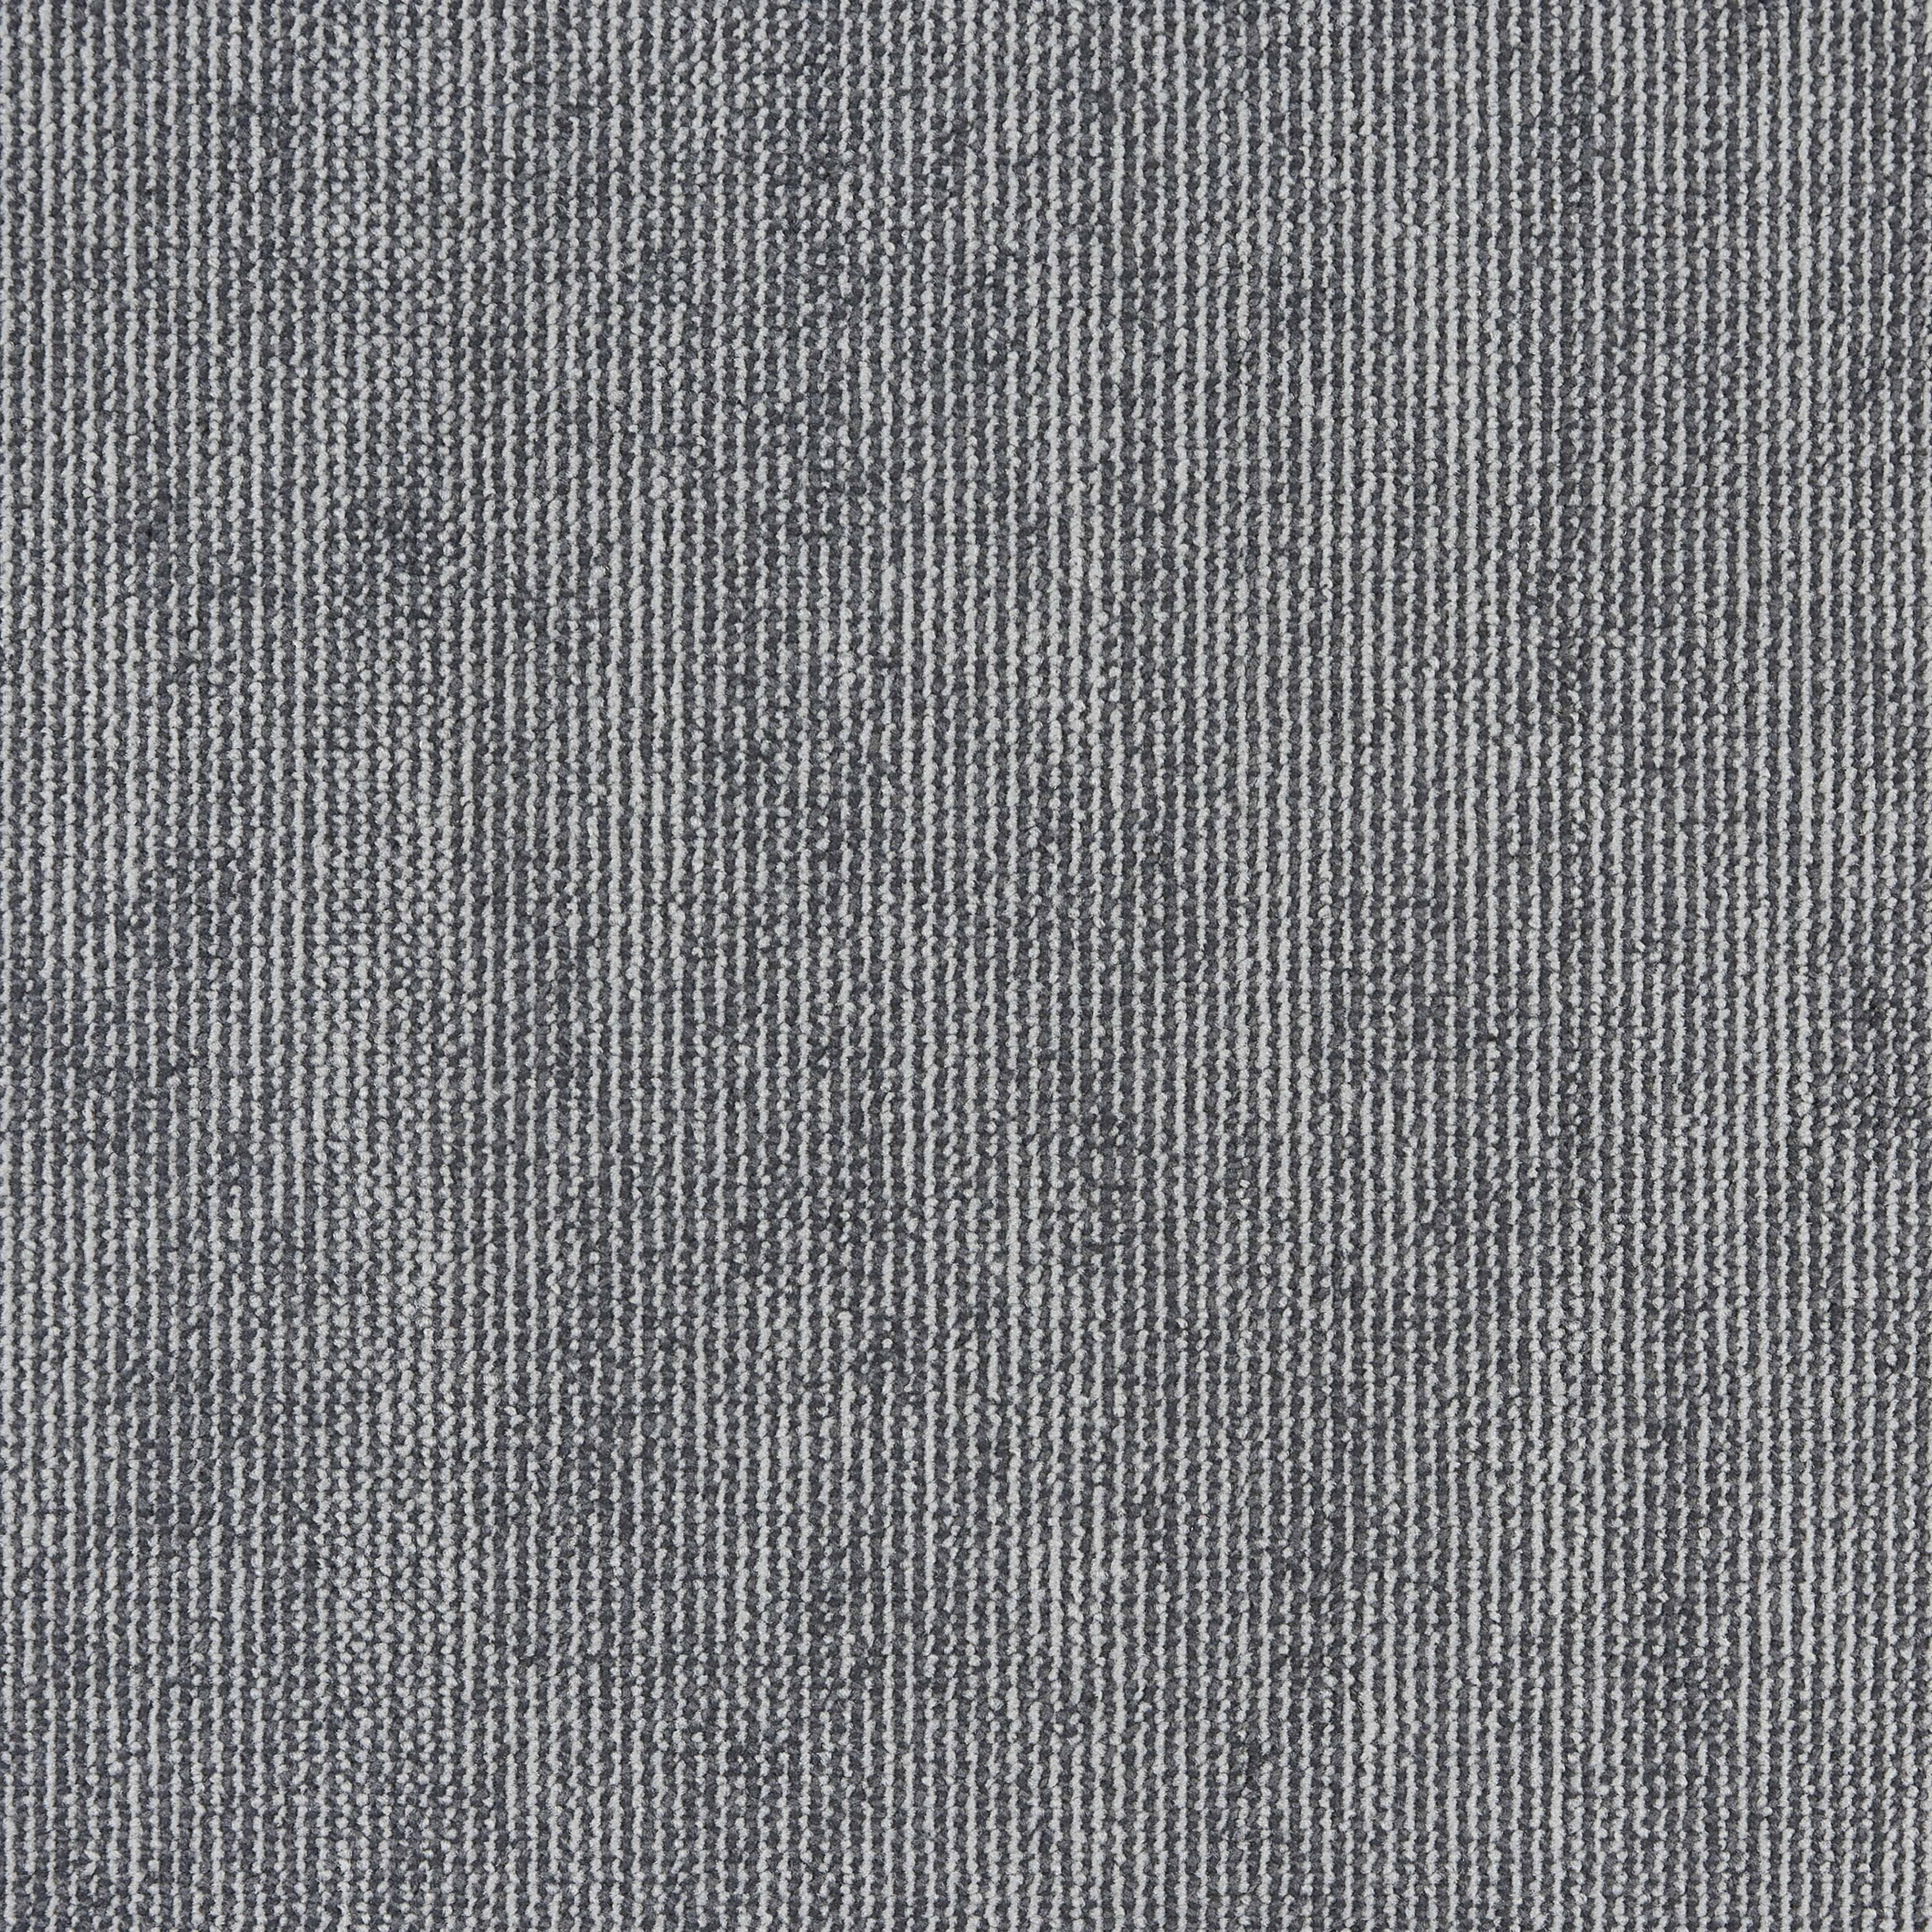 Ковровая плитка Innovflor Illusion F04 0.5*0.5 м